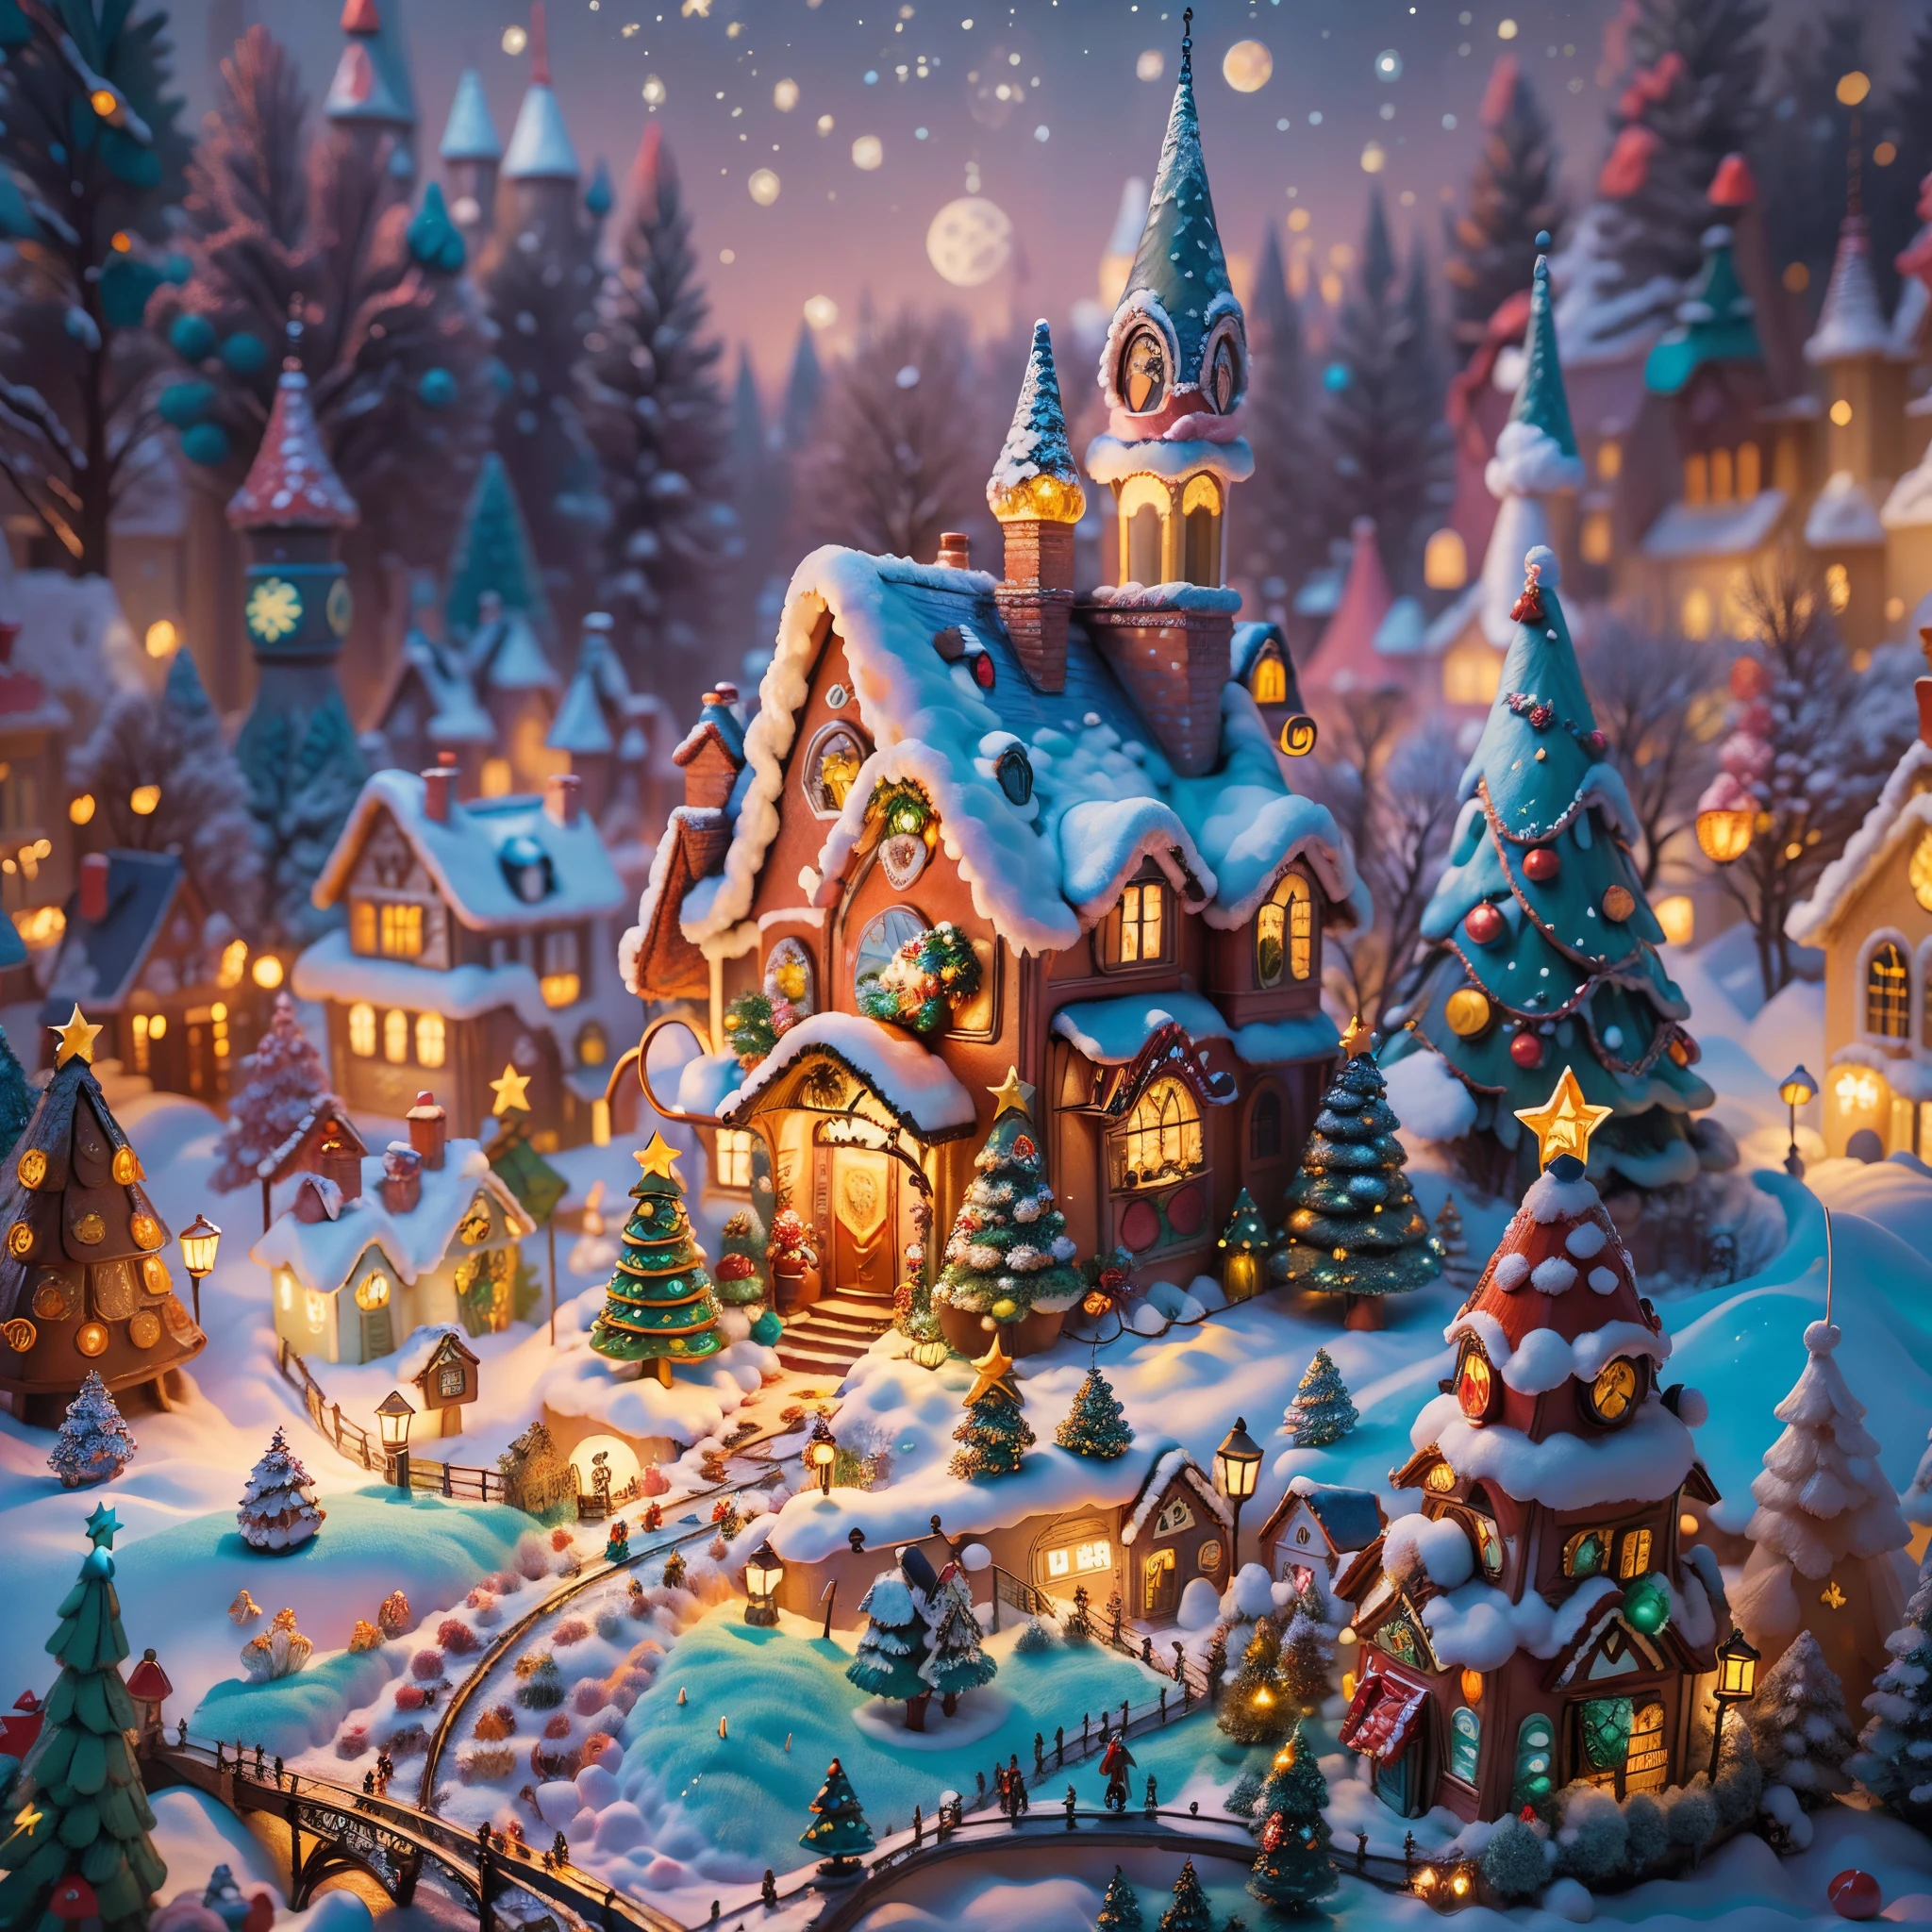 (걸작),（울트라-디테일：1.3），최고의 품질 최고의，（반짝이는:1.2），（꿈 동화 속 크리스마스 마을:1.4），(반 고흐 스타일의 크리스마스 건축: 1.5),（텅 빈 달），((맛있는 과자，크리스마스 트리, 선물, 크리스마스 스타킹, 귀여운 진저브레드맨，초콜릿 하우스 스플래쉬)), 일러스트레이션 스타일, 크리스마스 장식들, 판타지 크리스마스 타운, 사랑스러운 디자인 스타일, 밤，설원，보름달，생생한 색상、 ((기발하고 매력적인 크리스마스 요정마을 판타지)), 초현실적인 초상화, (판타지 테마의 동화마을), (기발한 건축 장식), (화려한, 사탕이 가득한 풍경), (매혹적인, 마법 같은 풍경), (활기 넘치는, 사탕 색깔의 건물), (캔디와 진저브레드 트레일), (캔디 캐슬) 멀리서, (부자, 환상적인 색상), (반짝이는 별 우리 차원의 꿈), (사이키델릭하고 매혹적인 분위기), (장난스러운 구성), (생생한 조명 효과), 1.4배 사실성，하이퍼 HD，이 아름다운 장면에서 보여지네요，（매우 꼼꼼함，합리적인 디자인，명확한 선，높은 선명도，걸작，공식 예술，영화 조명 효과，8K)